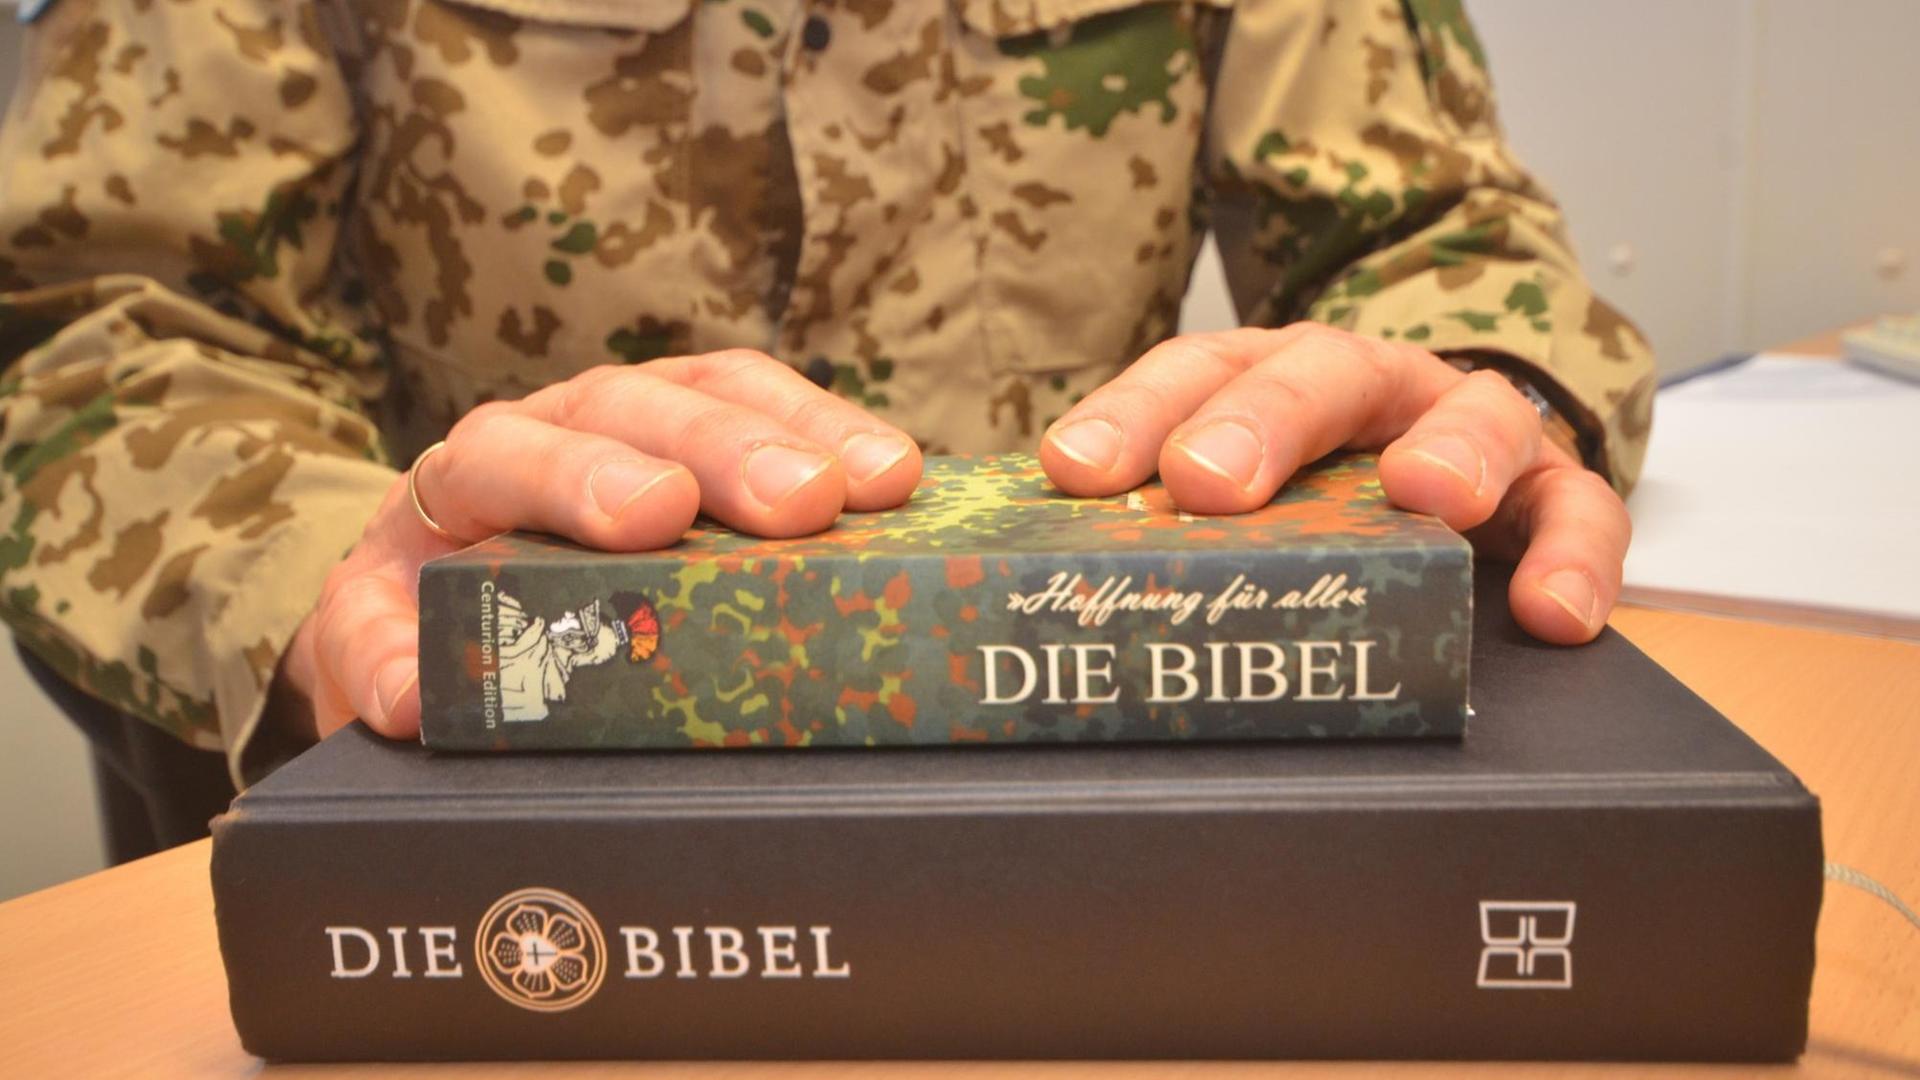 Eine Bibel in Flecktarn liegt auf einer klassisch gebundenen Bibel - die Hände des Militärpfarrers darüber.